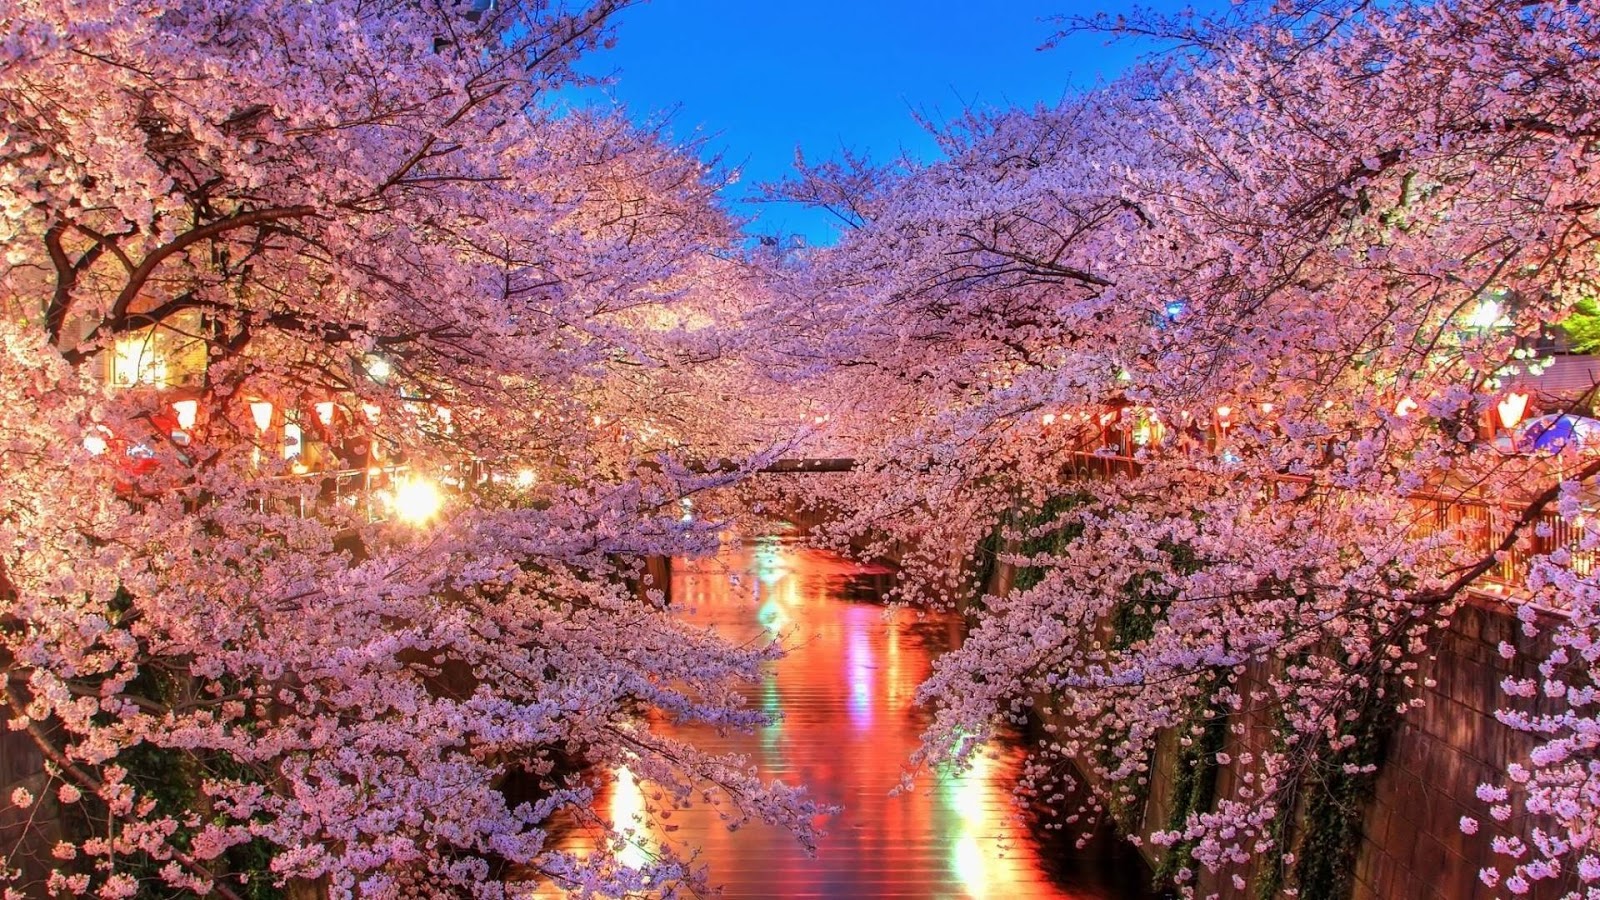 Gambar Bunga Sakura Jepang Indah Cantik - Gambar Kata Kata